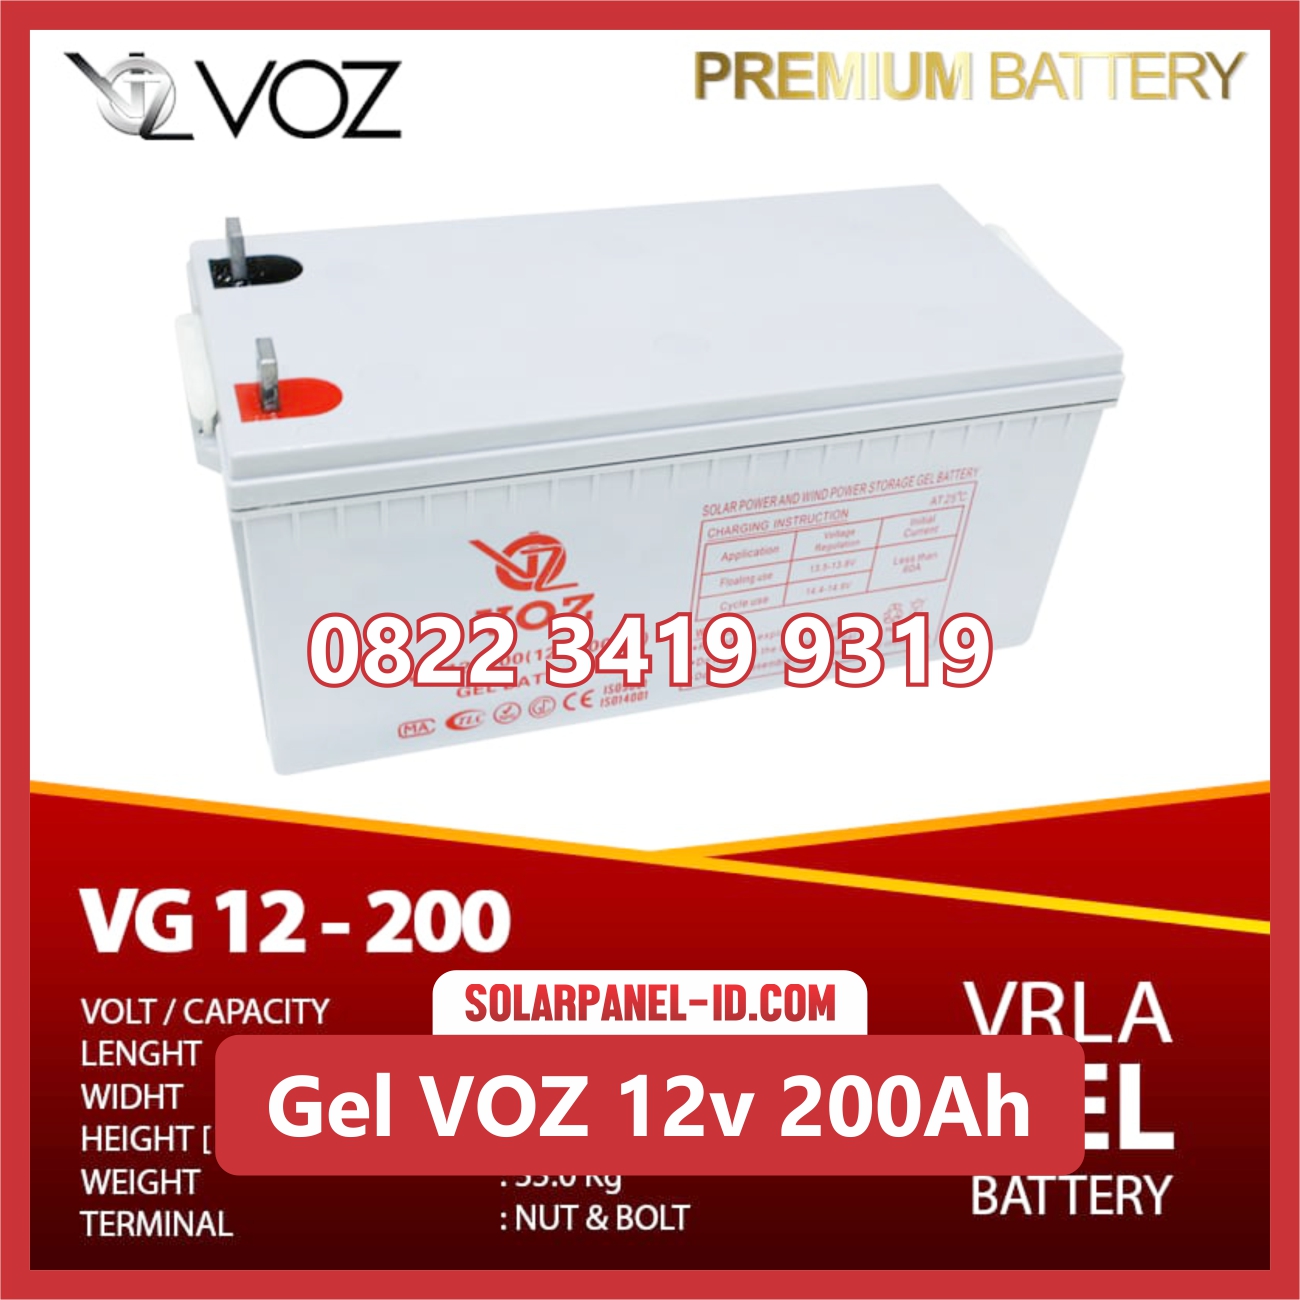 VOZ baterai kering gel 12v 200ah baterai pju tenaga surya